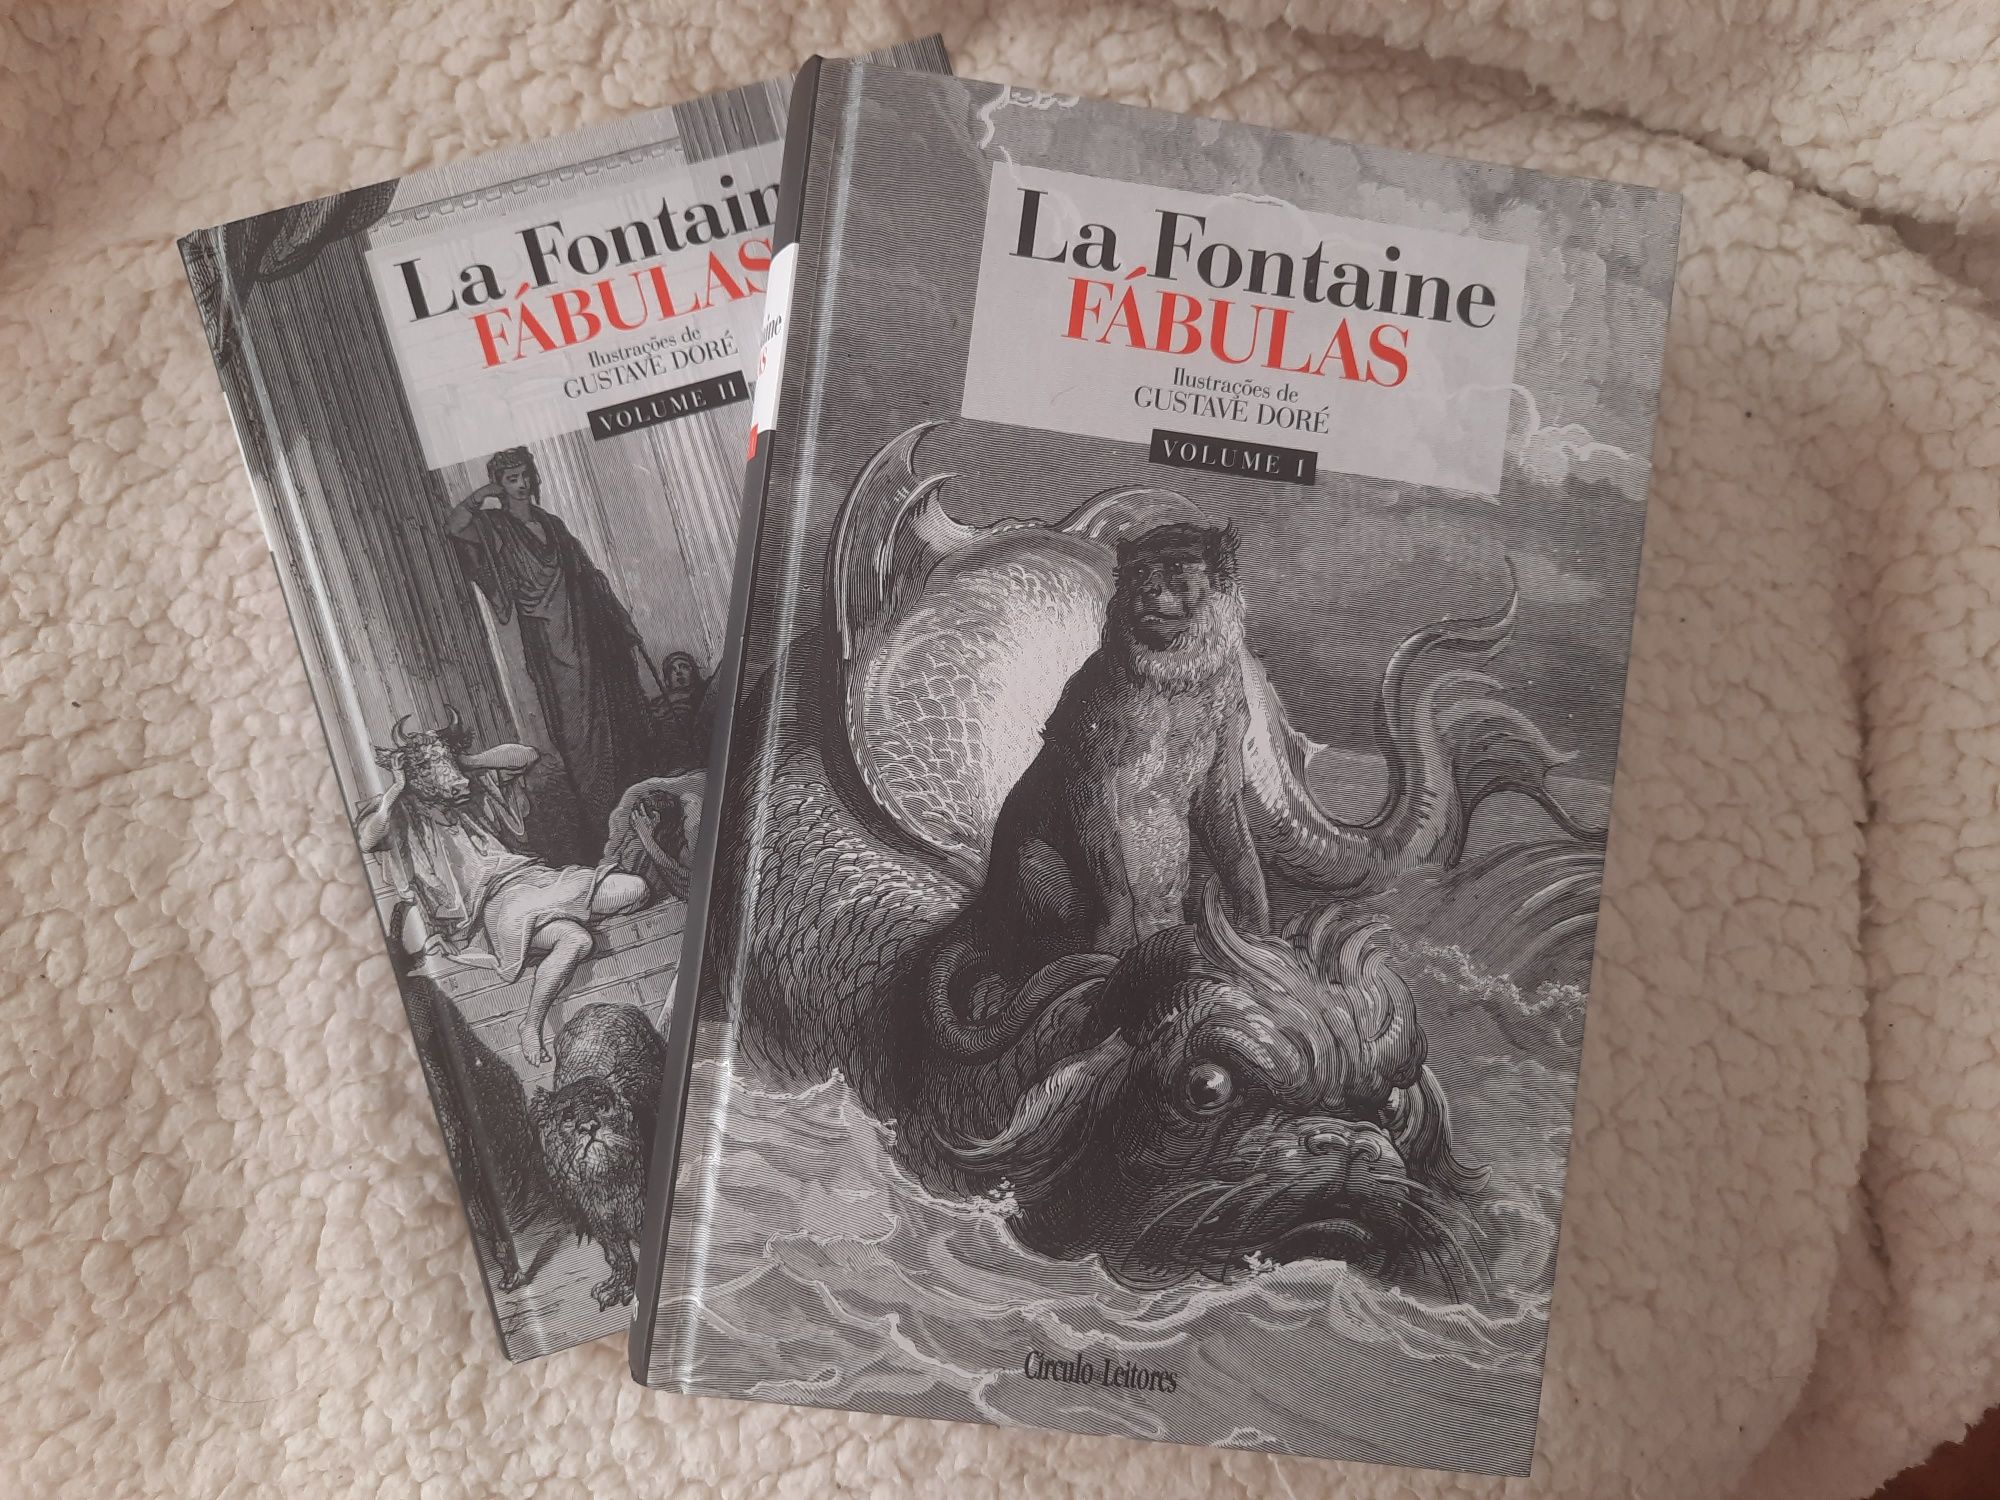 Fábulas La fontaine Volume 1 e 2 capa rija